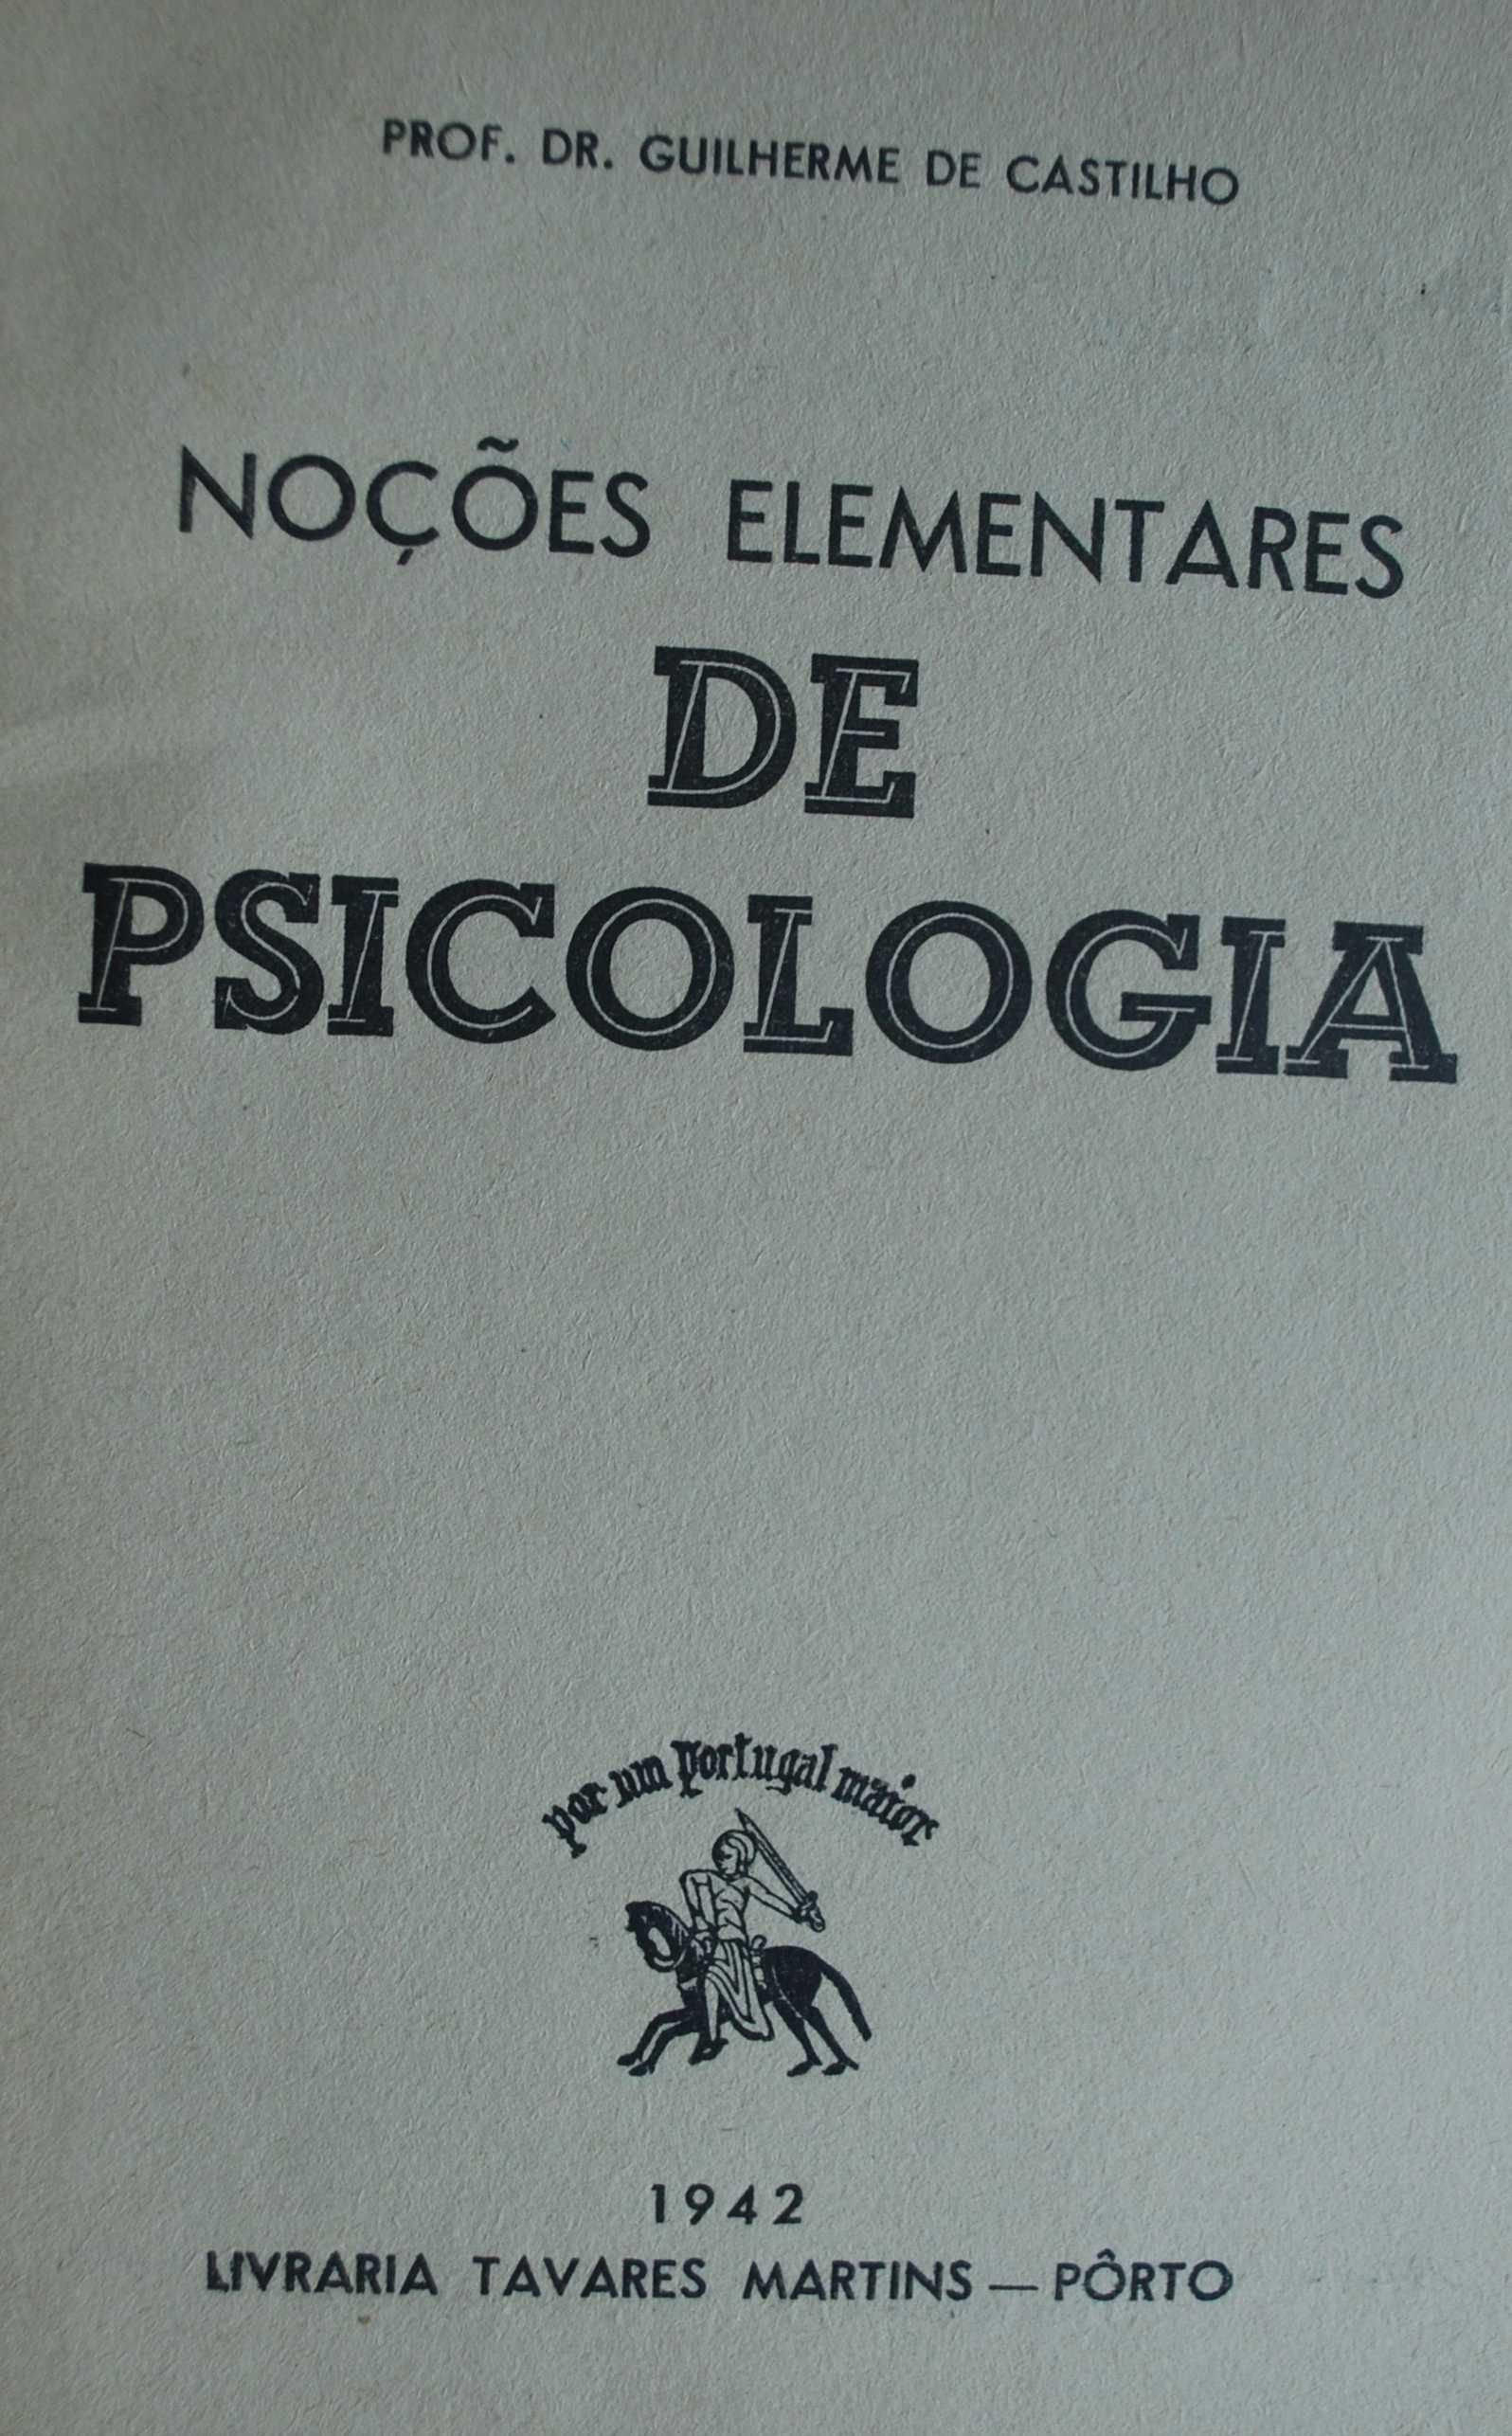 Noções Elementares de Psicologia do Dr. Guilherme de Castilho